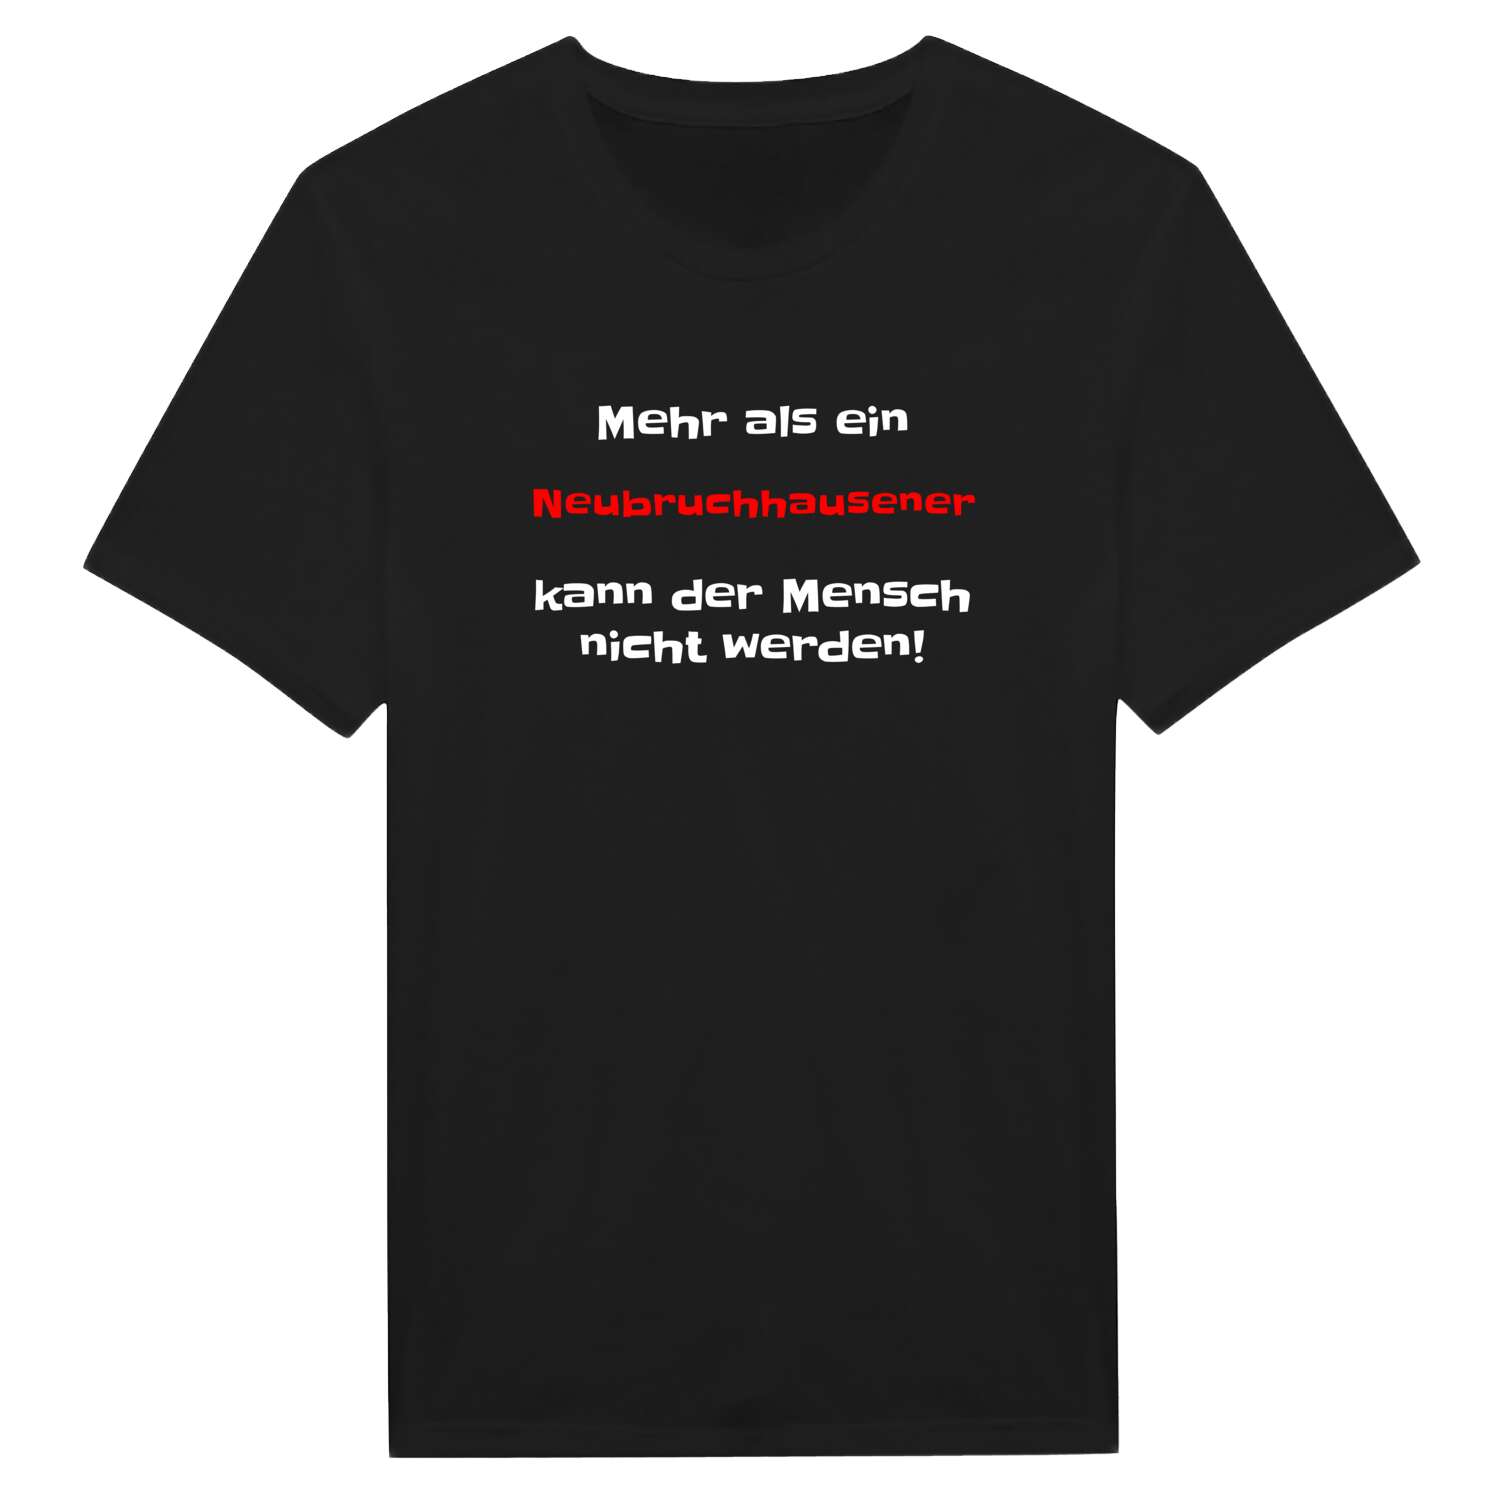 Neubruchhausen T-Shirt »Mehr als ein«